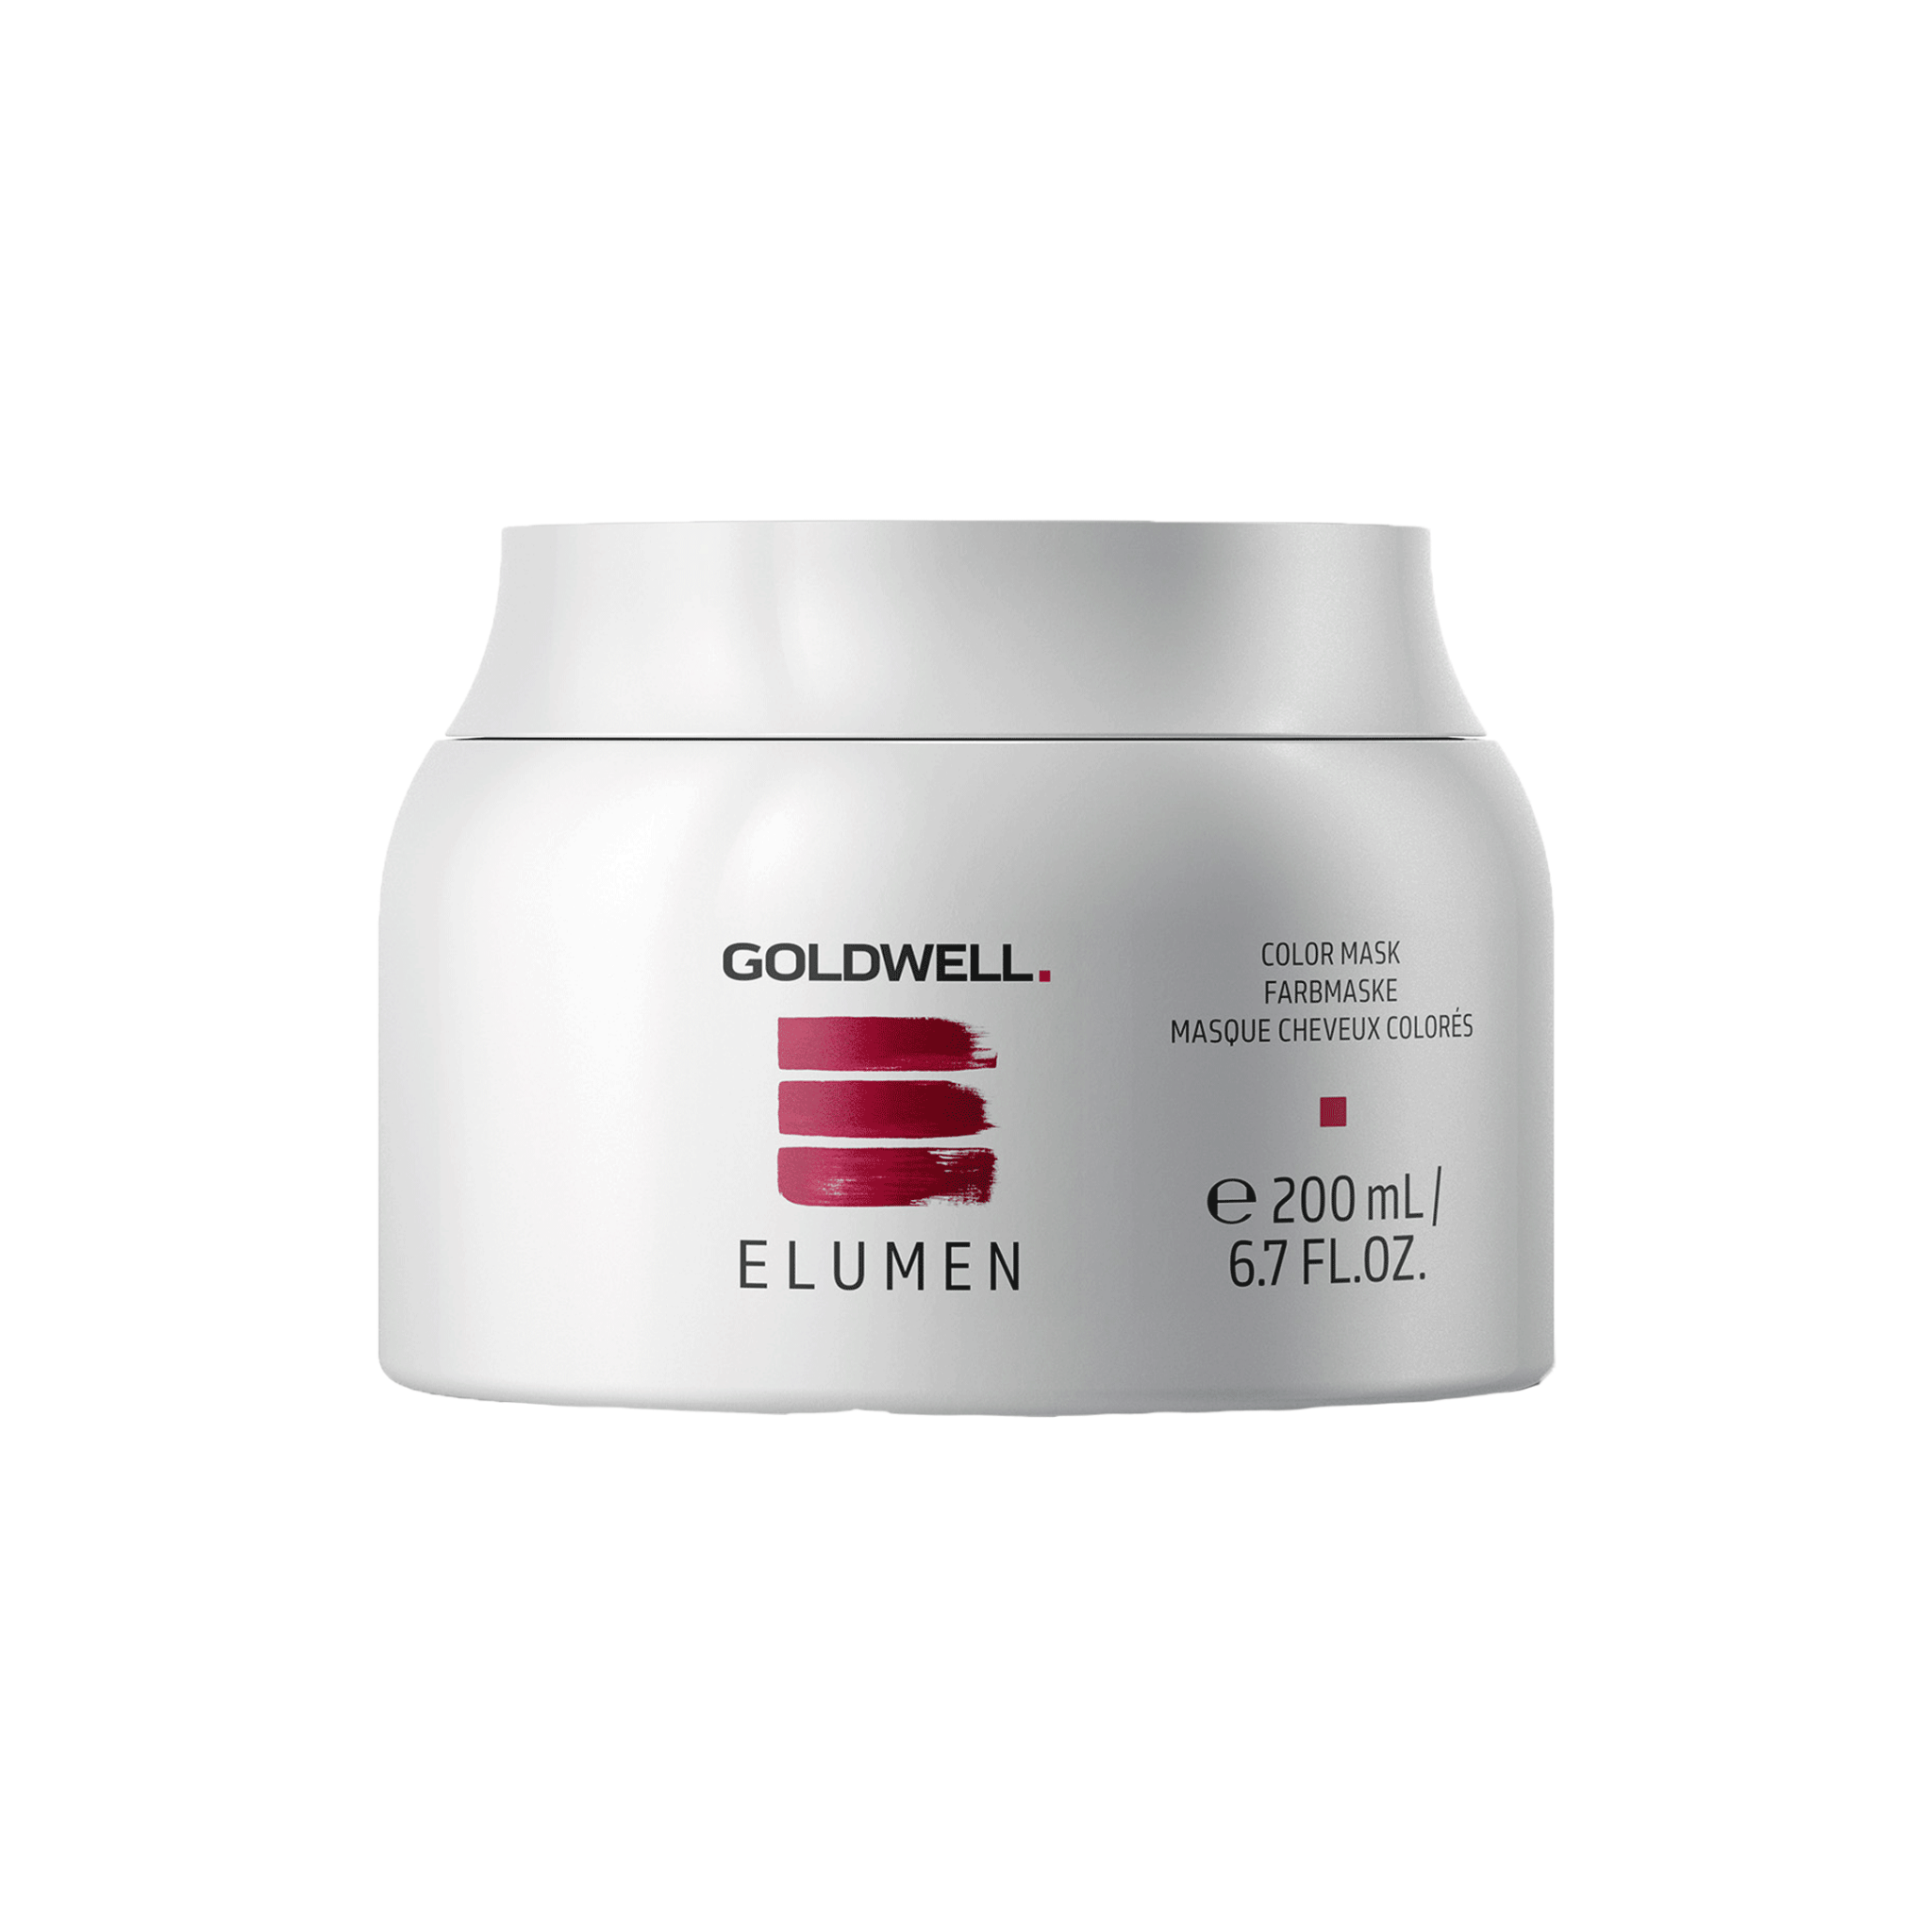 Goldwell. Elumen Masque Cheveux Colorés - 200ml